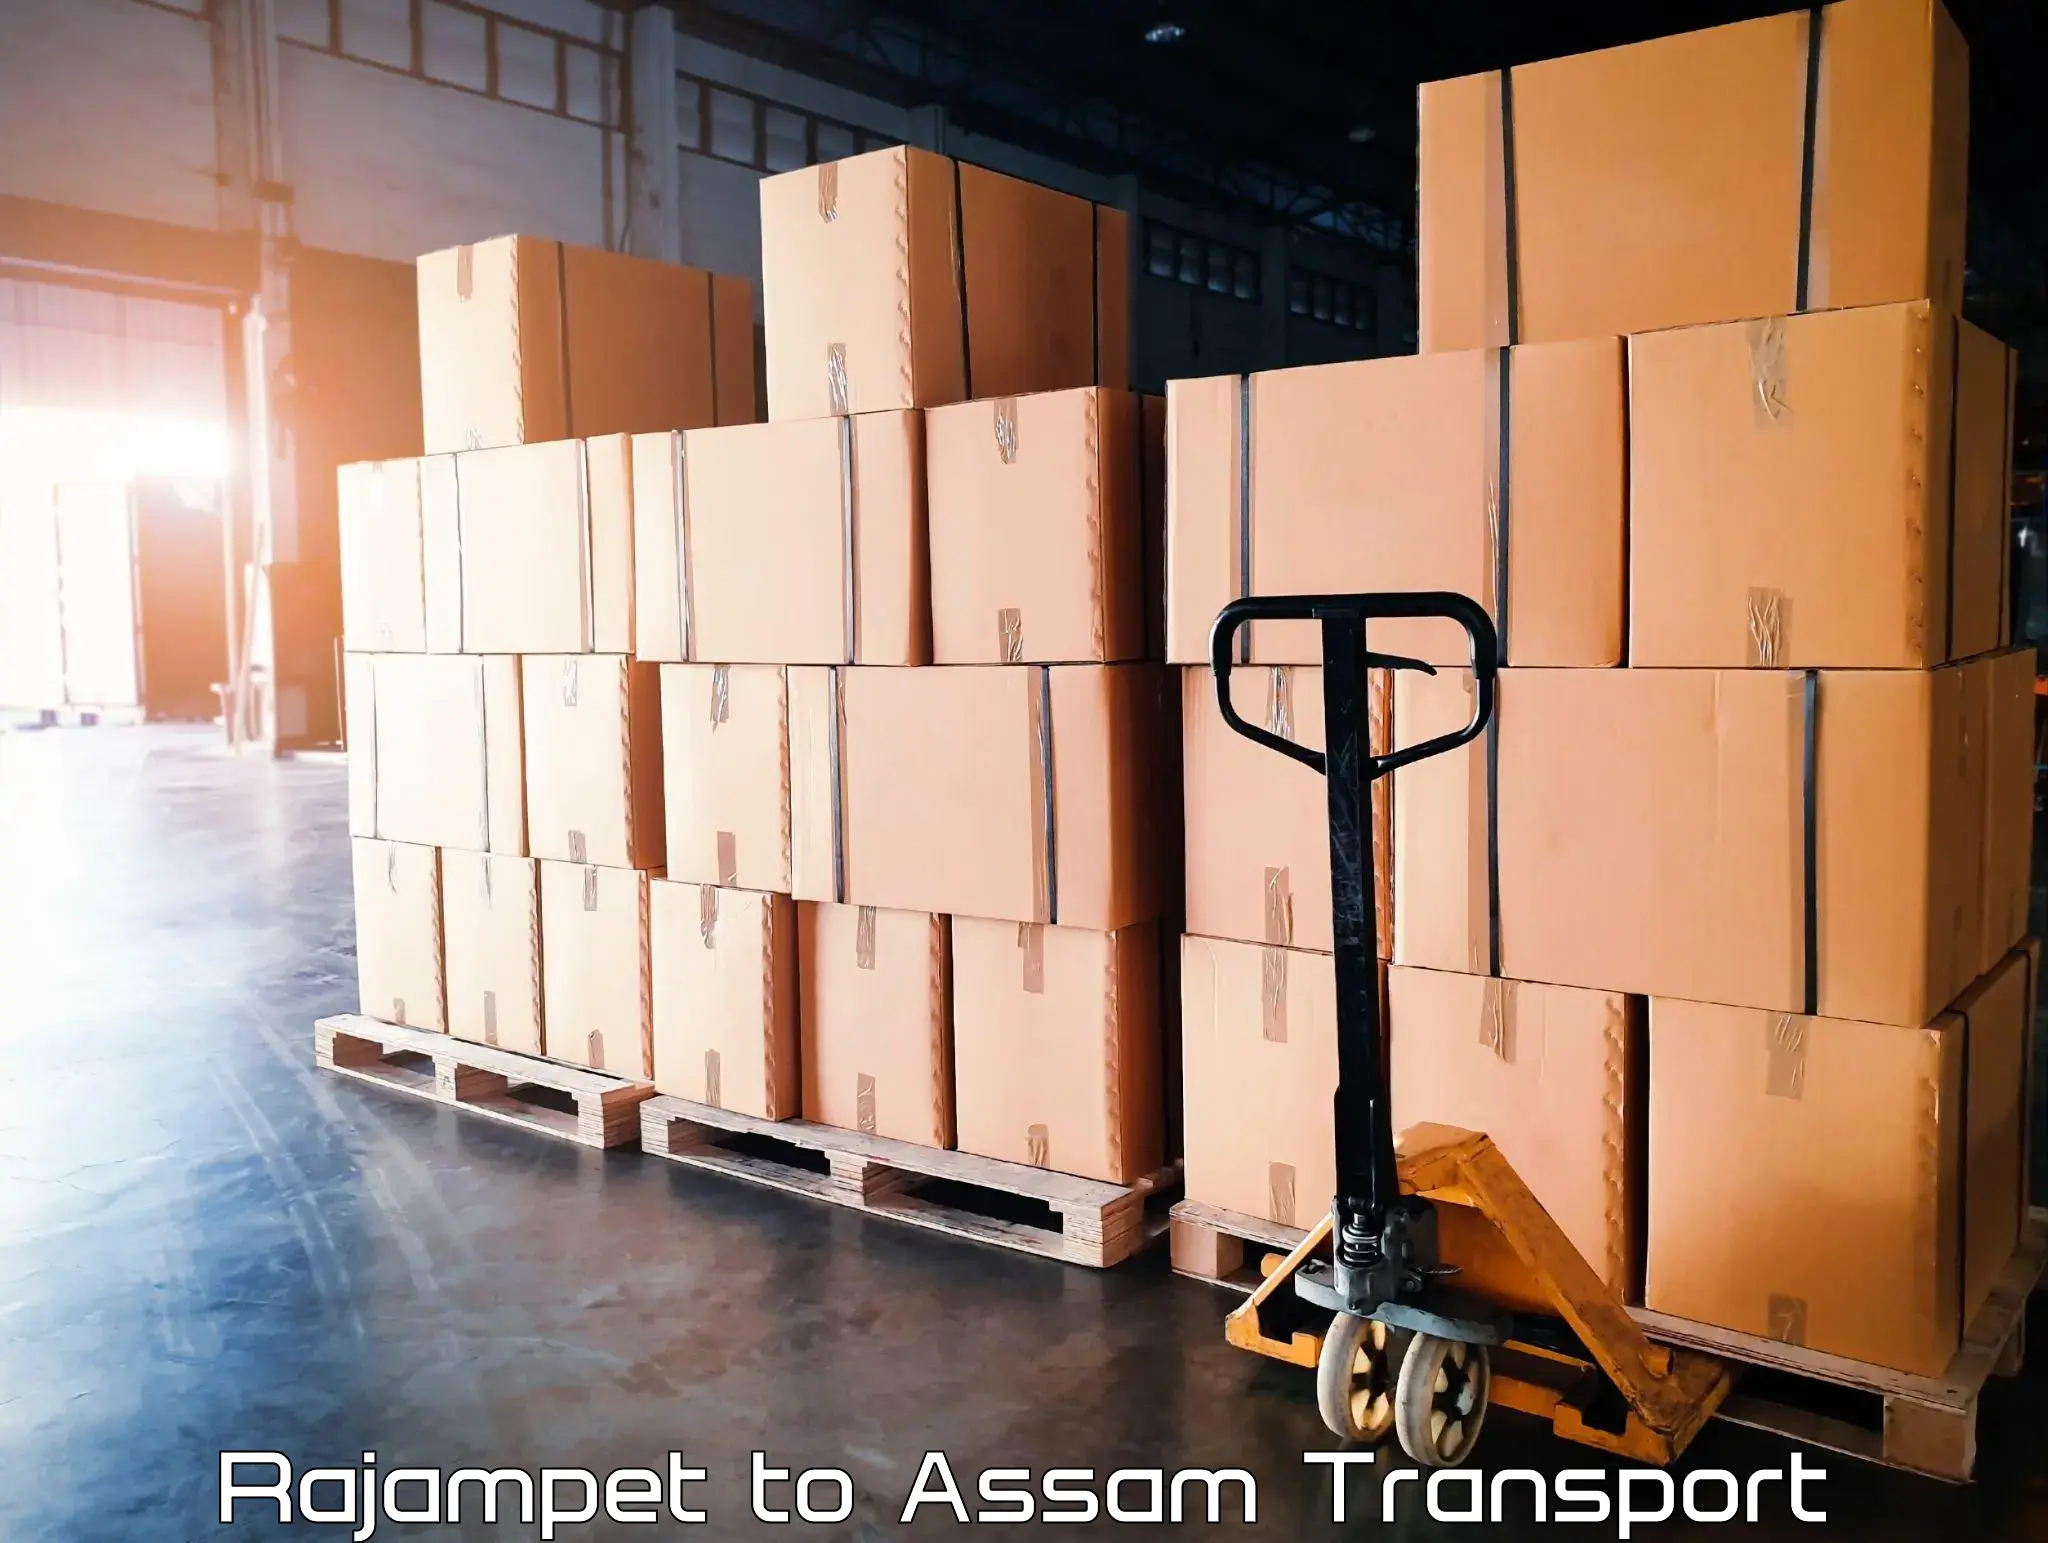 Vehicle transport services Rajampet to Assam